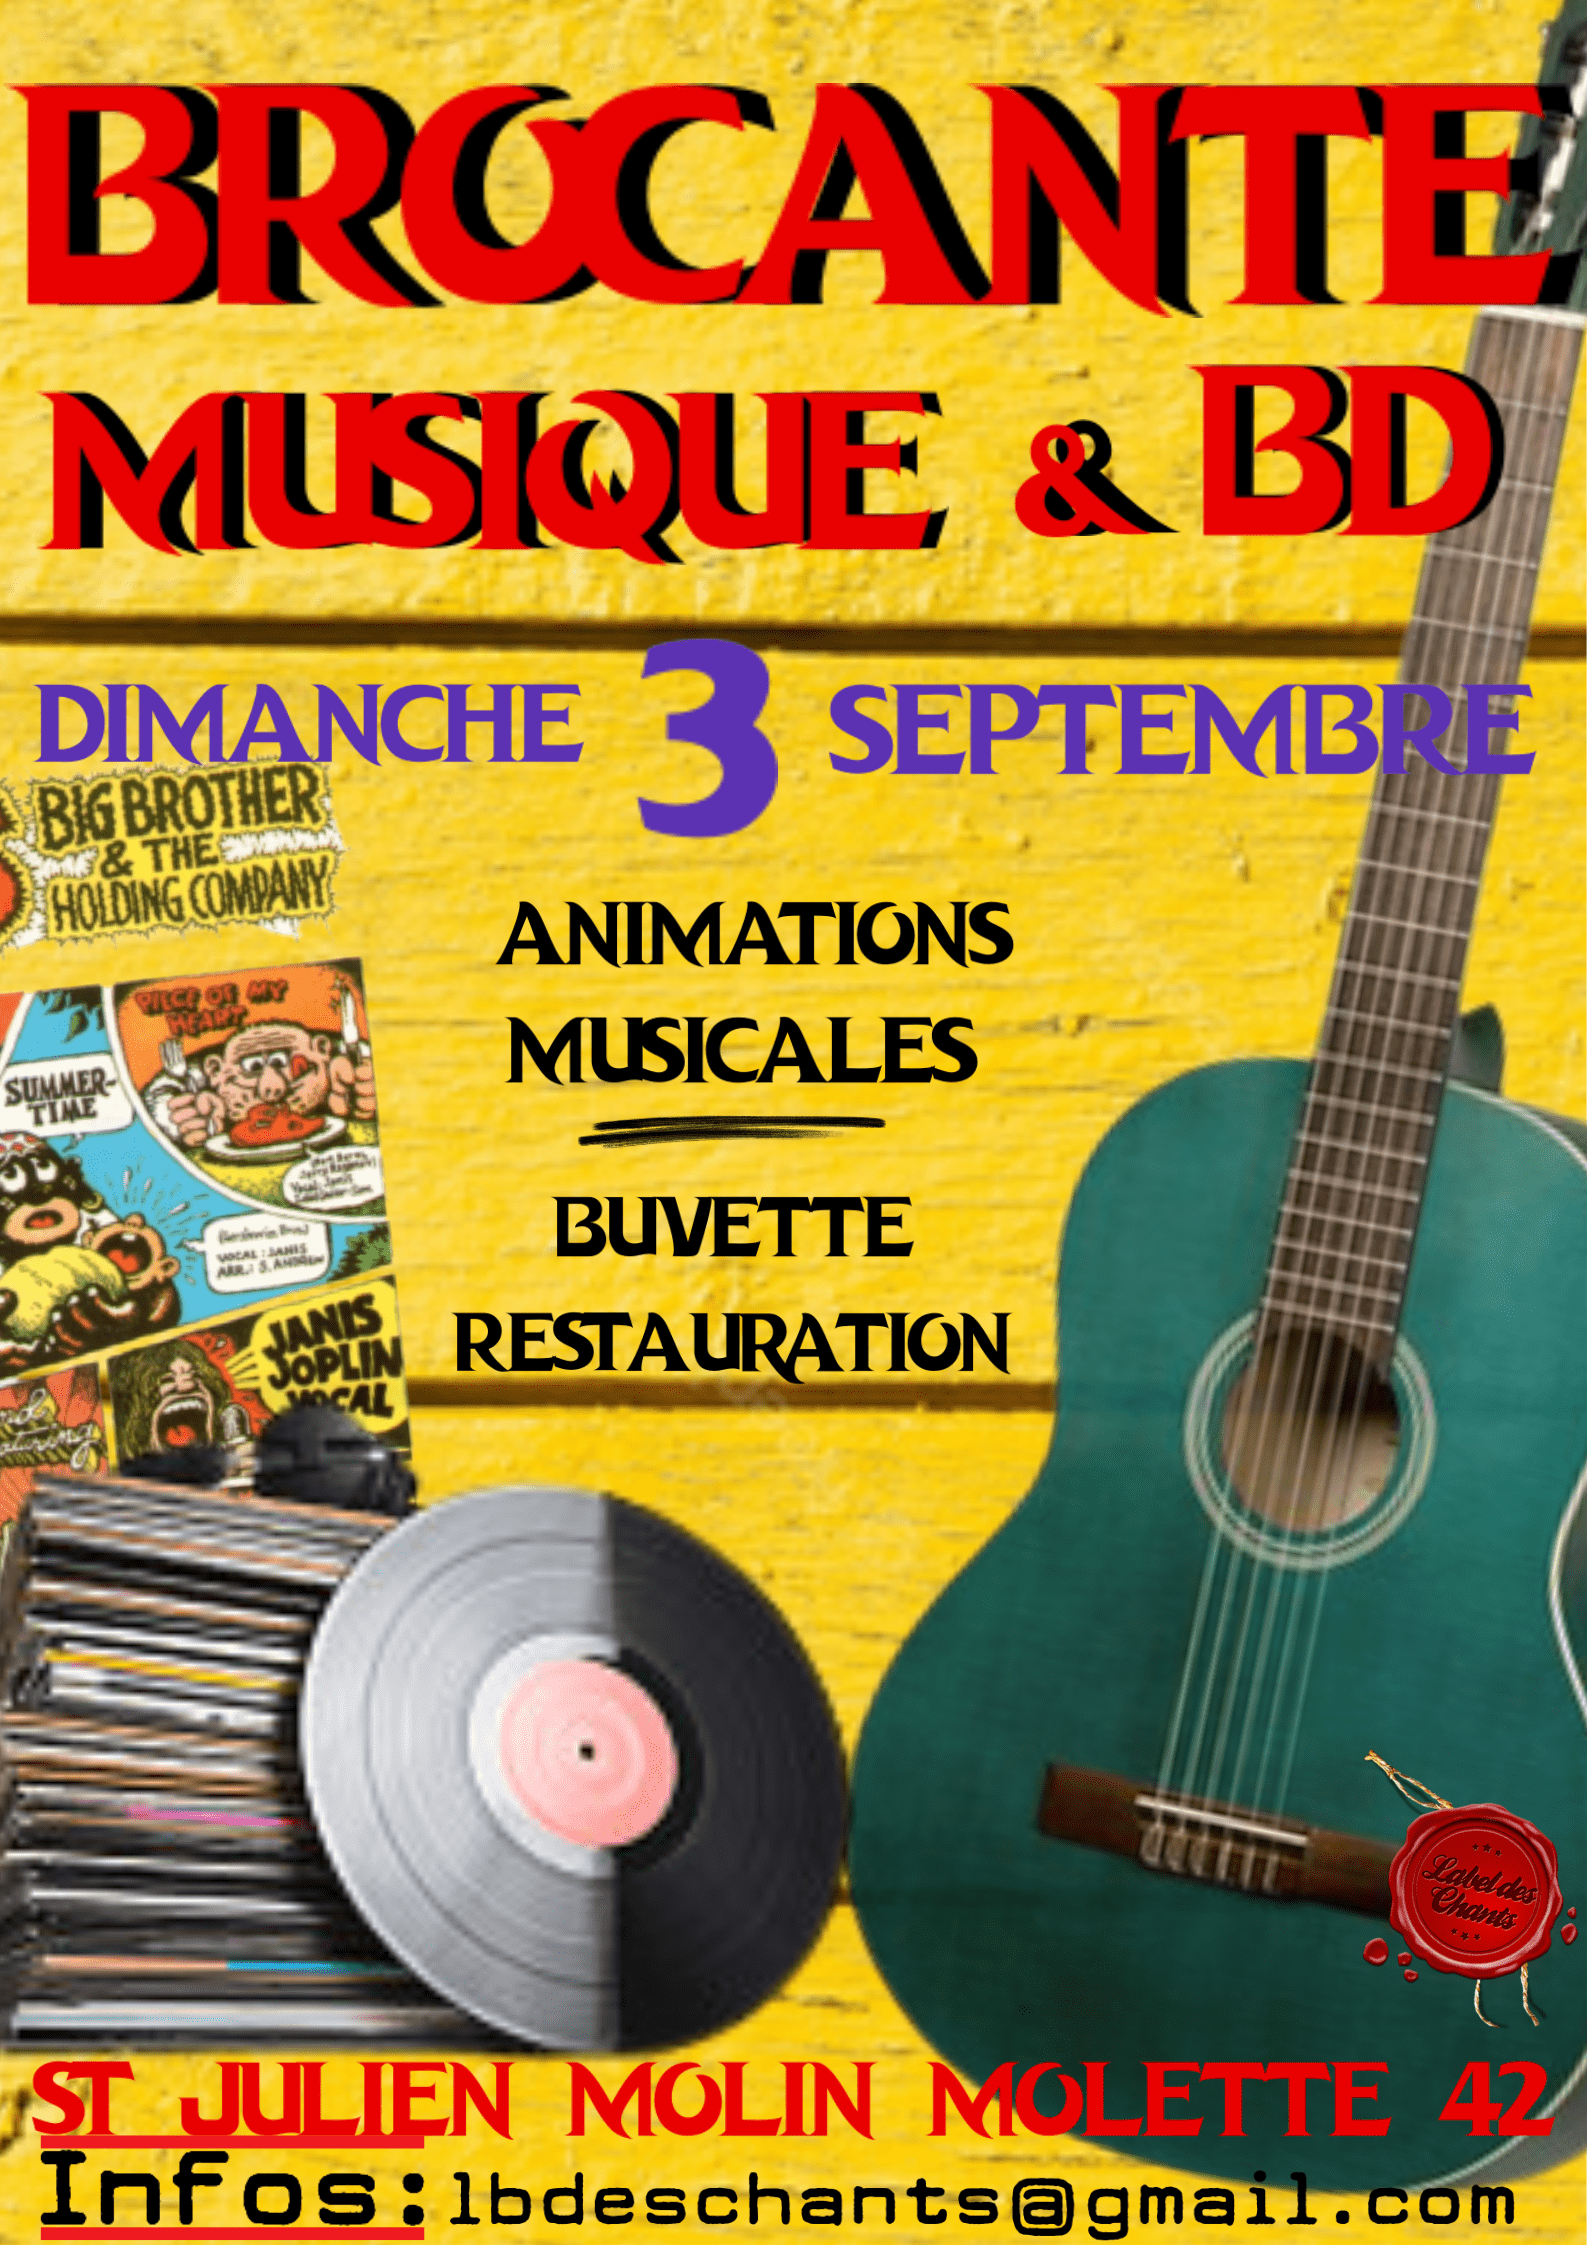 Brocante Musique et BD Dimanche 3 septembre Animations musicales Buvette & restauration Saint-Julien-Molin-Molette Infos : lbdeschants@gmail.com